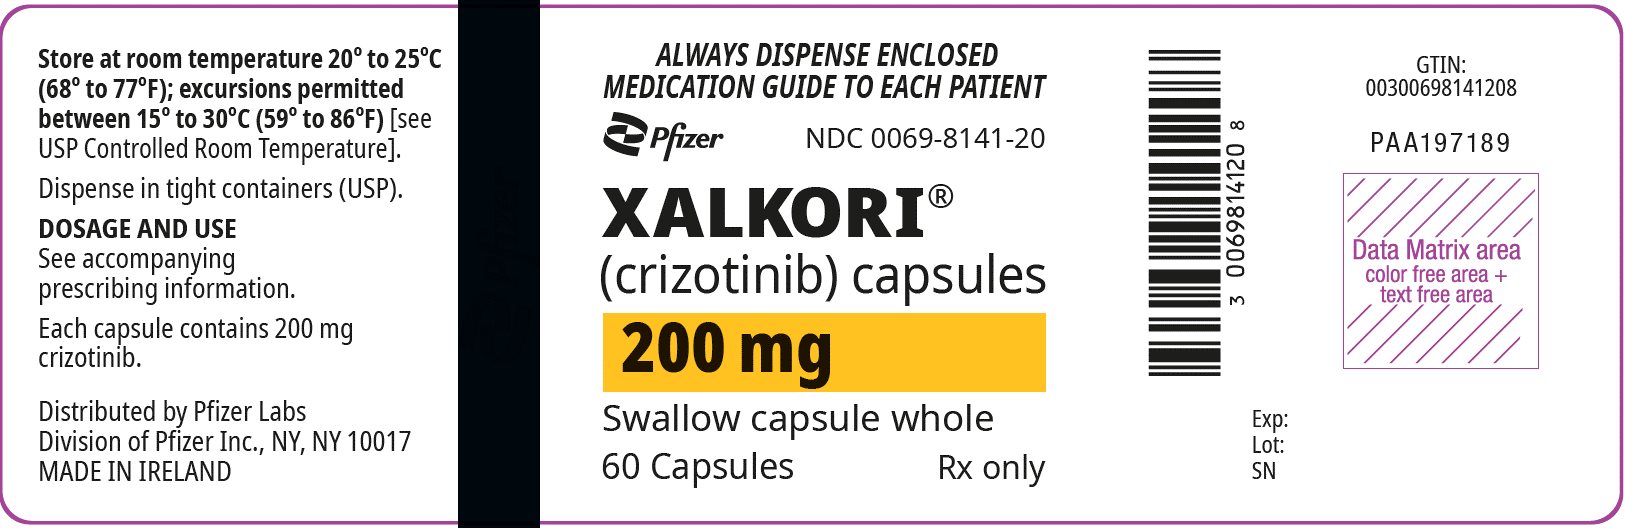 PRINCIPAL DISPLAY PANEL - 200 mg 캡슐 병 라벨